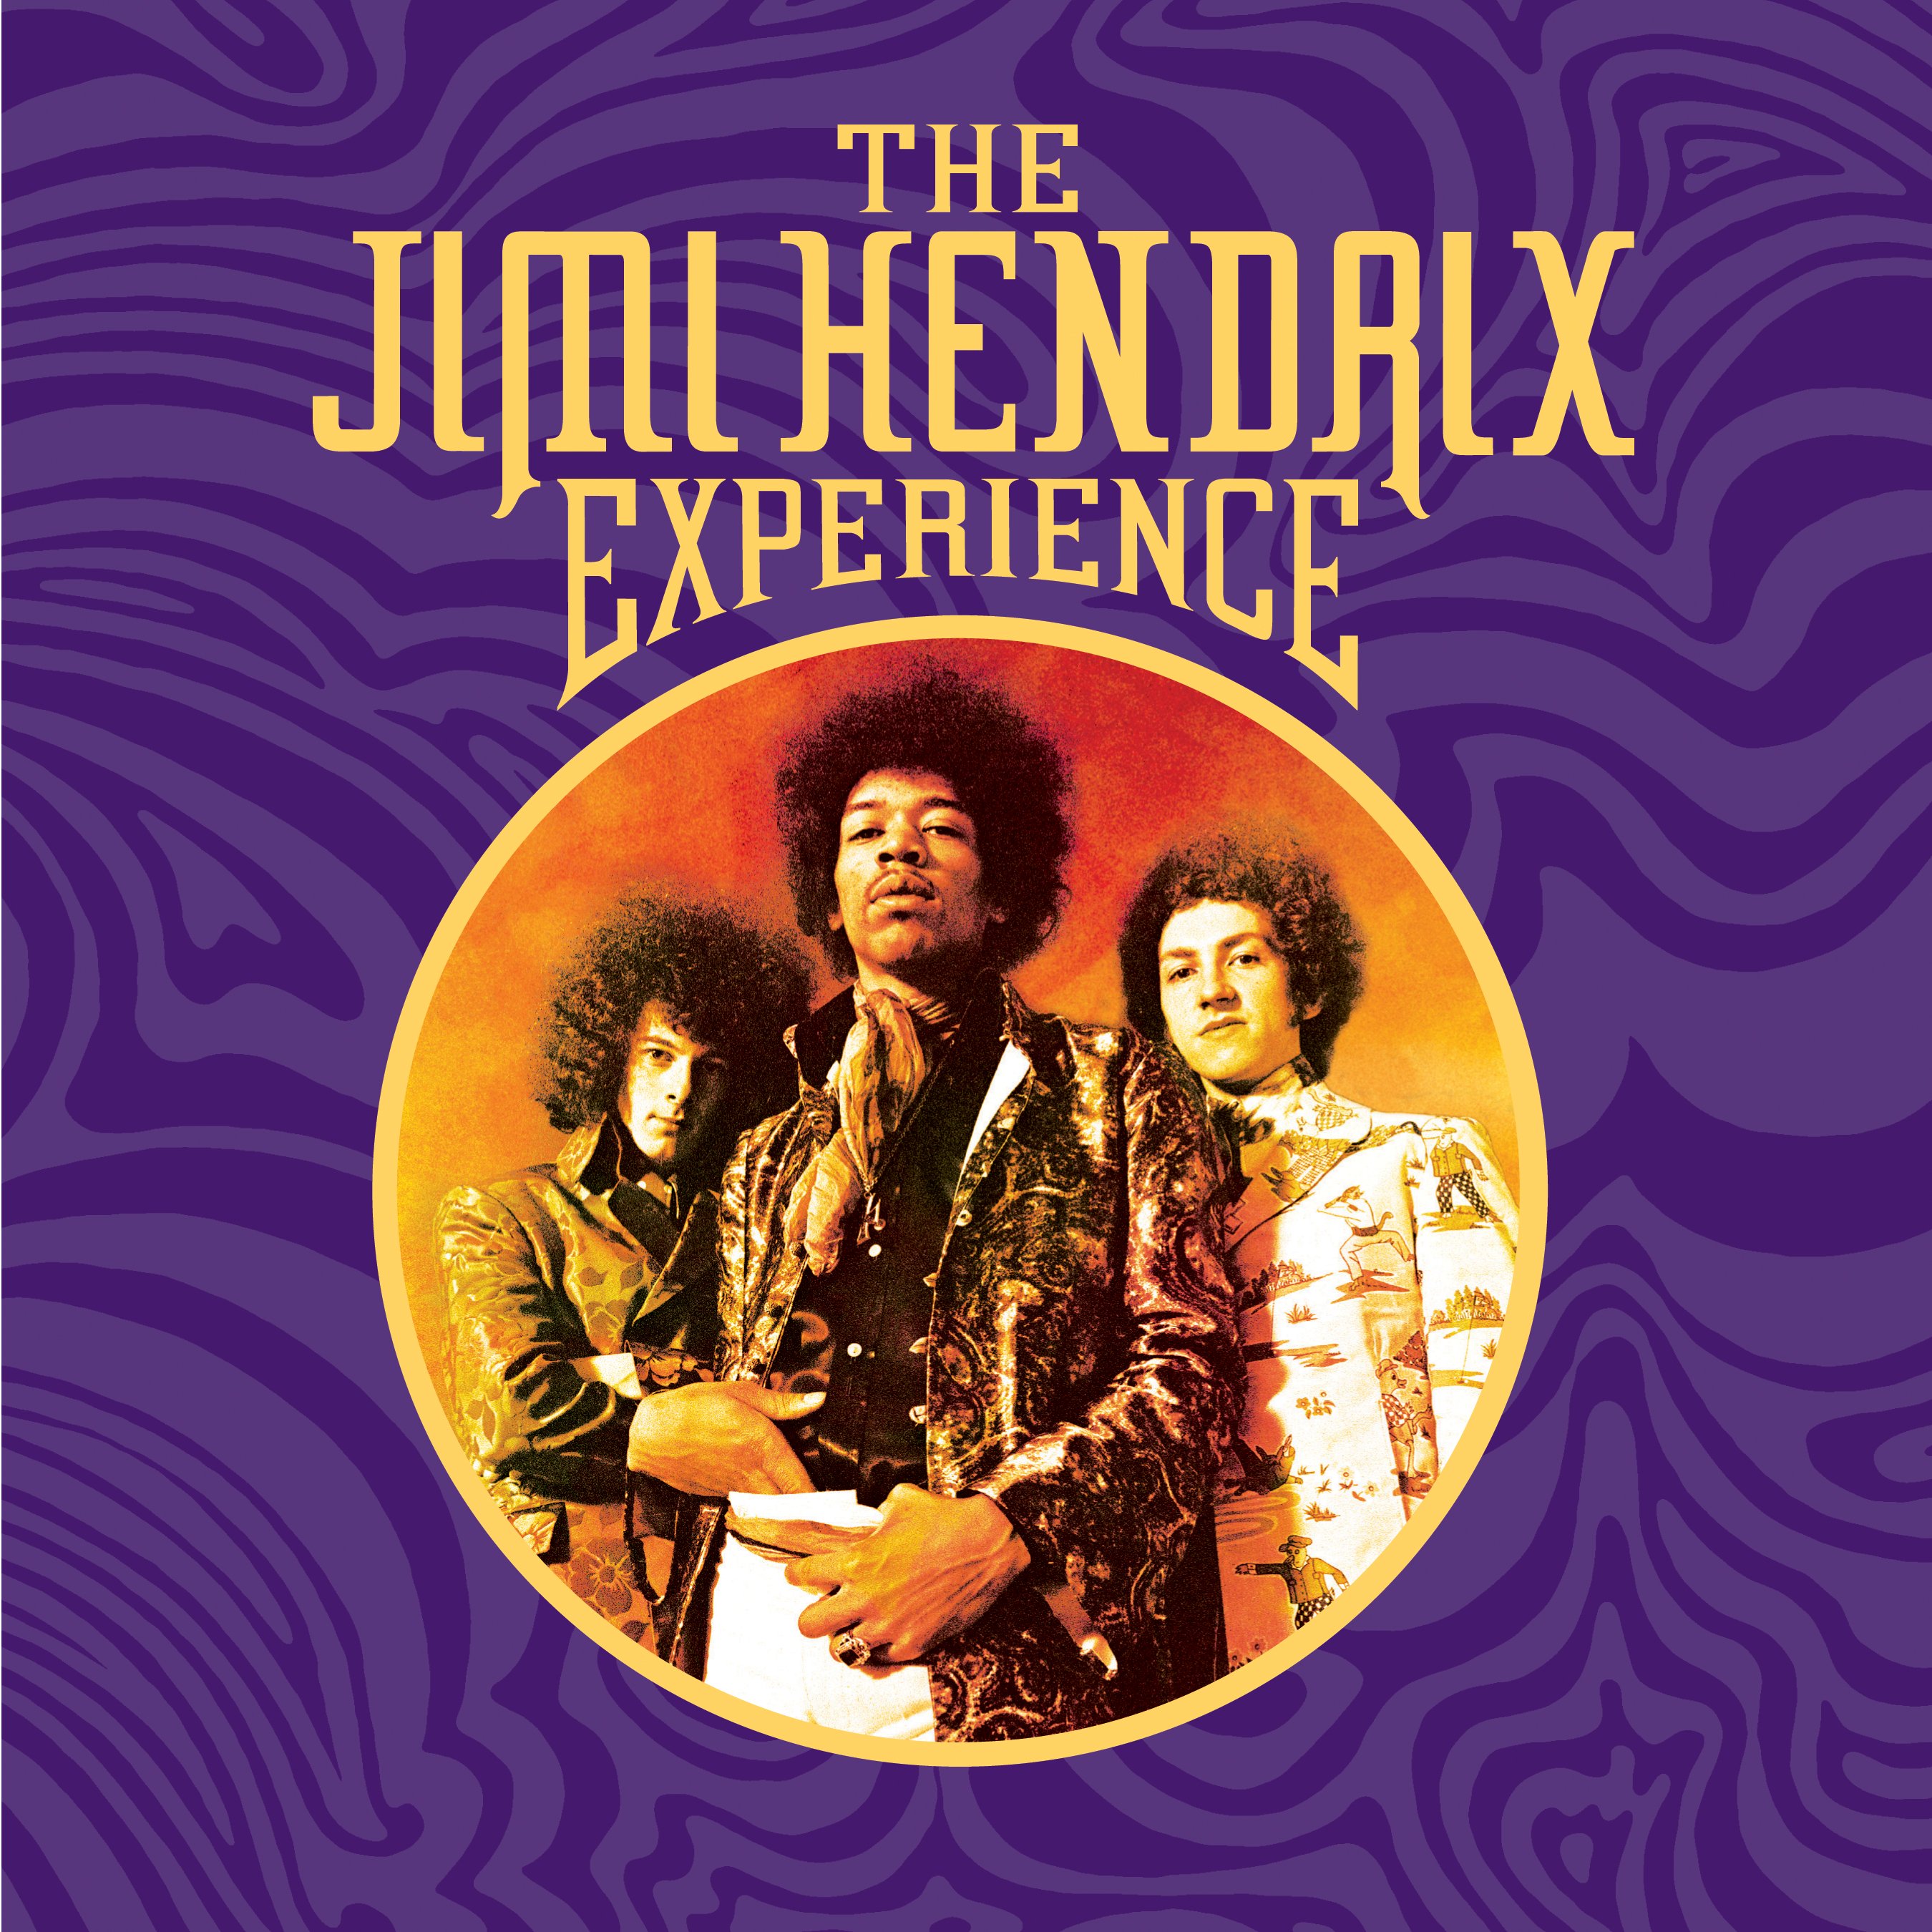 Jimi Hendrix Album Download Zip